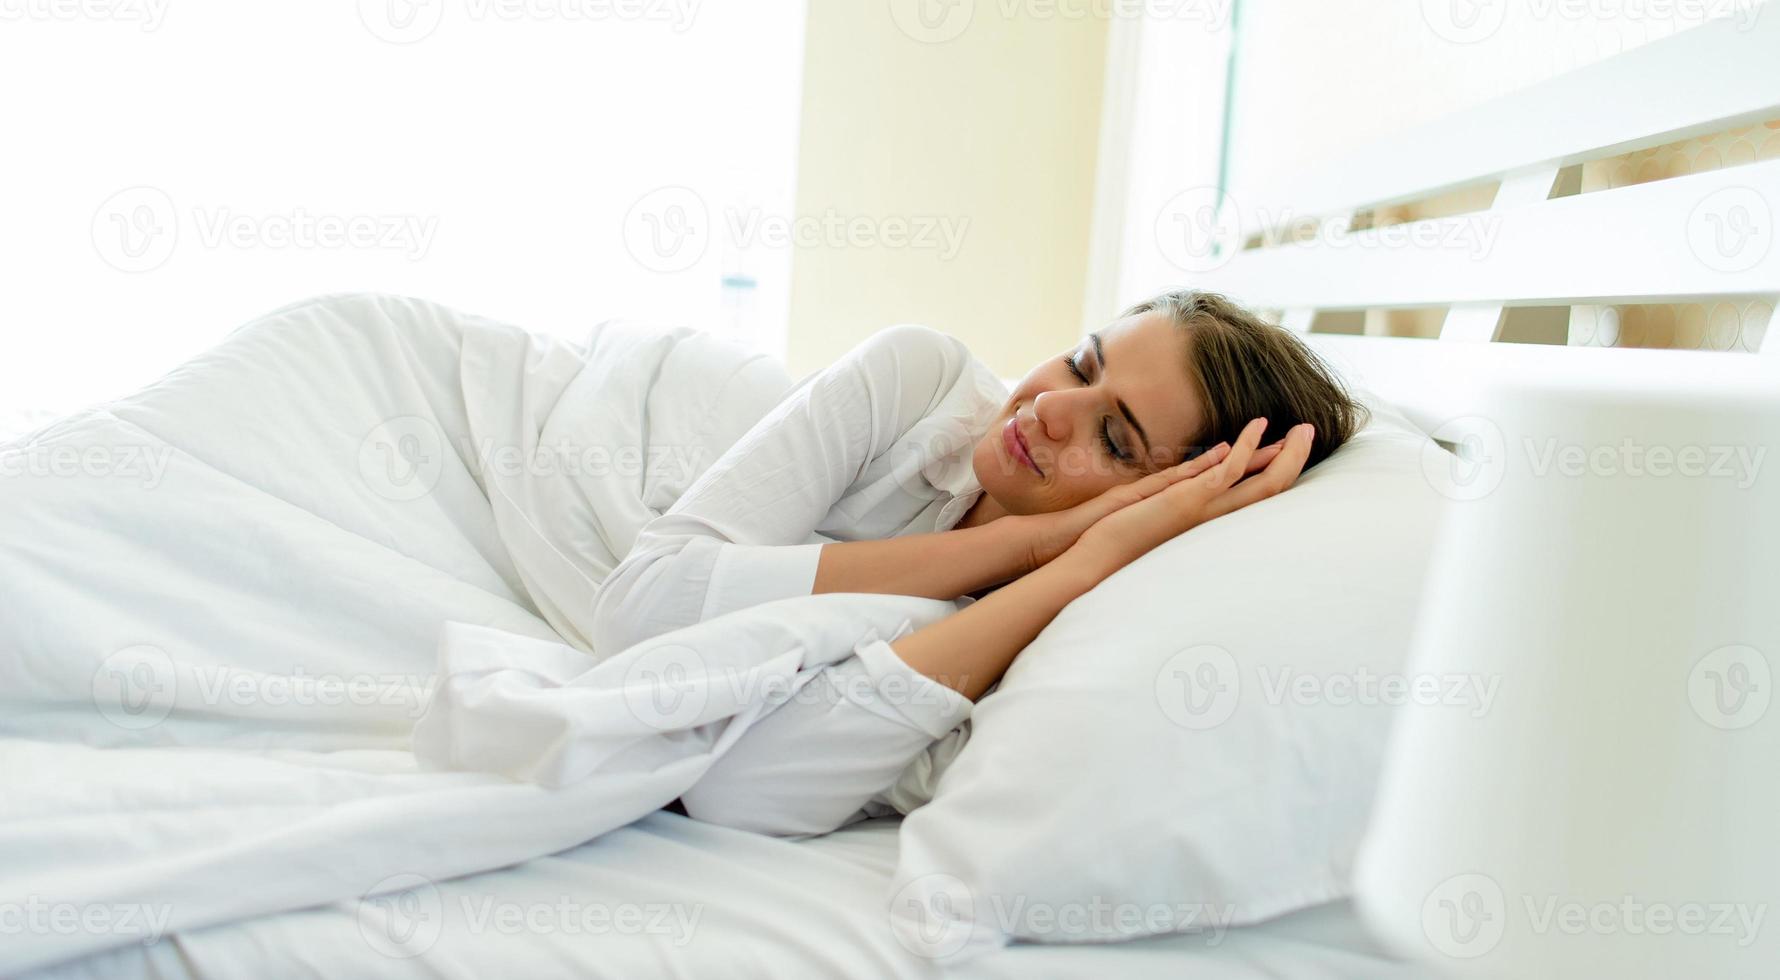 sovande kvinna från sidan av en vacker kvinna som ligger på sängen med slutna ögon medan täckt med ett filtfoto av vilande kropp foto